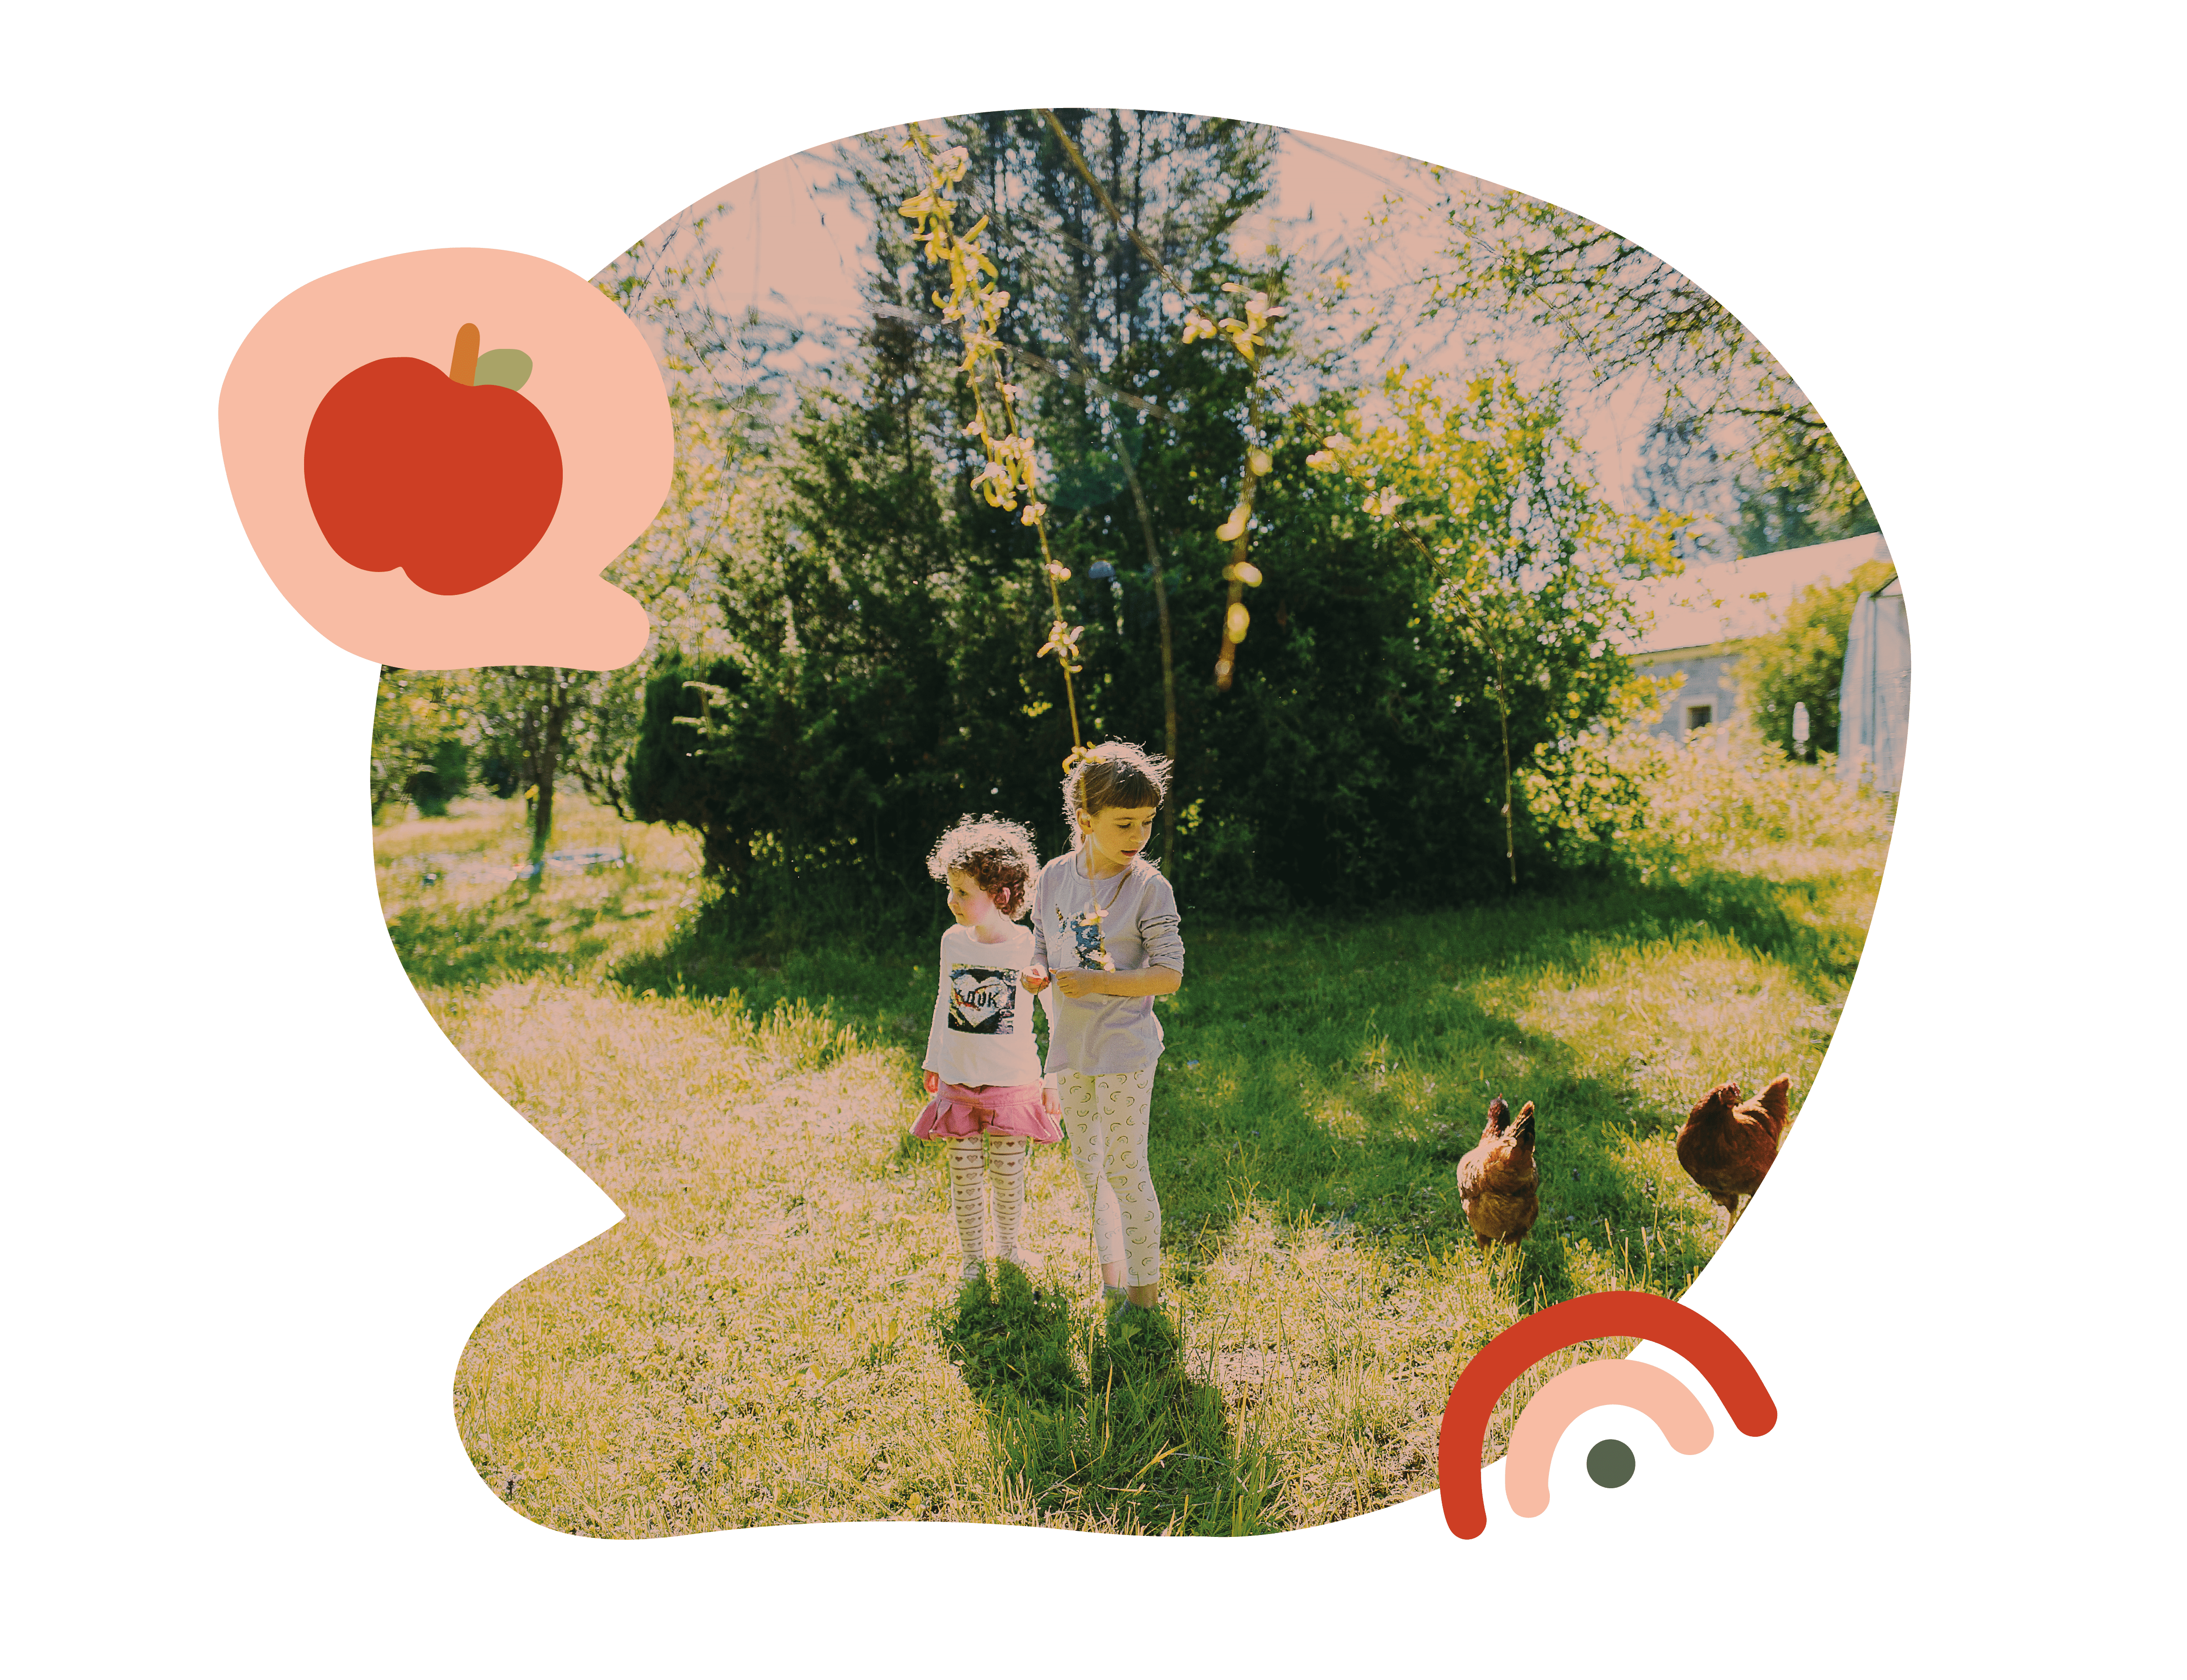 bulle conversation contenant une photo de 2 enfants observant des poules. 2 éléments graphiques sont ajoutées: une pomme rouge et un arc-en-ciel